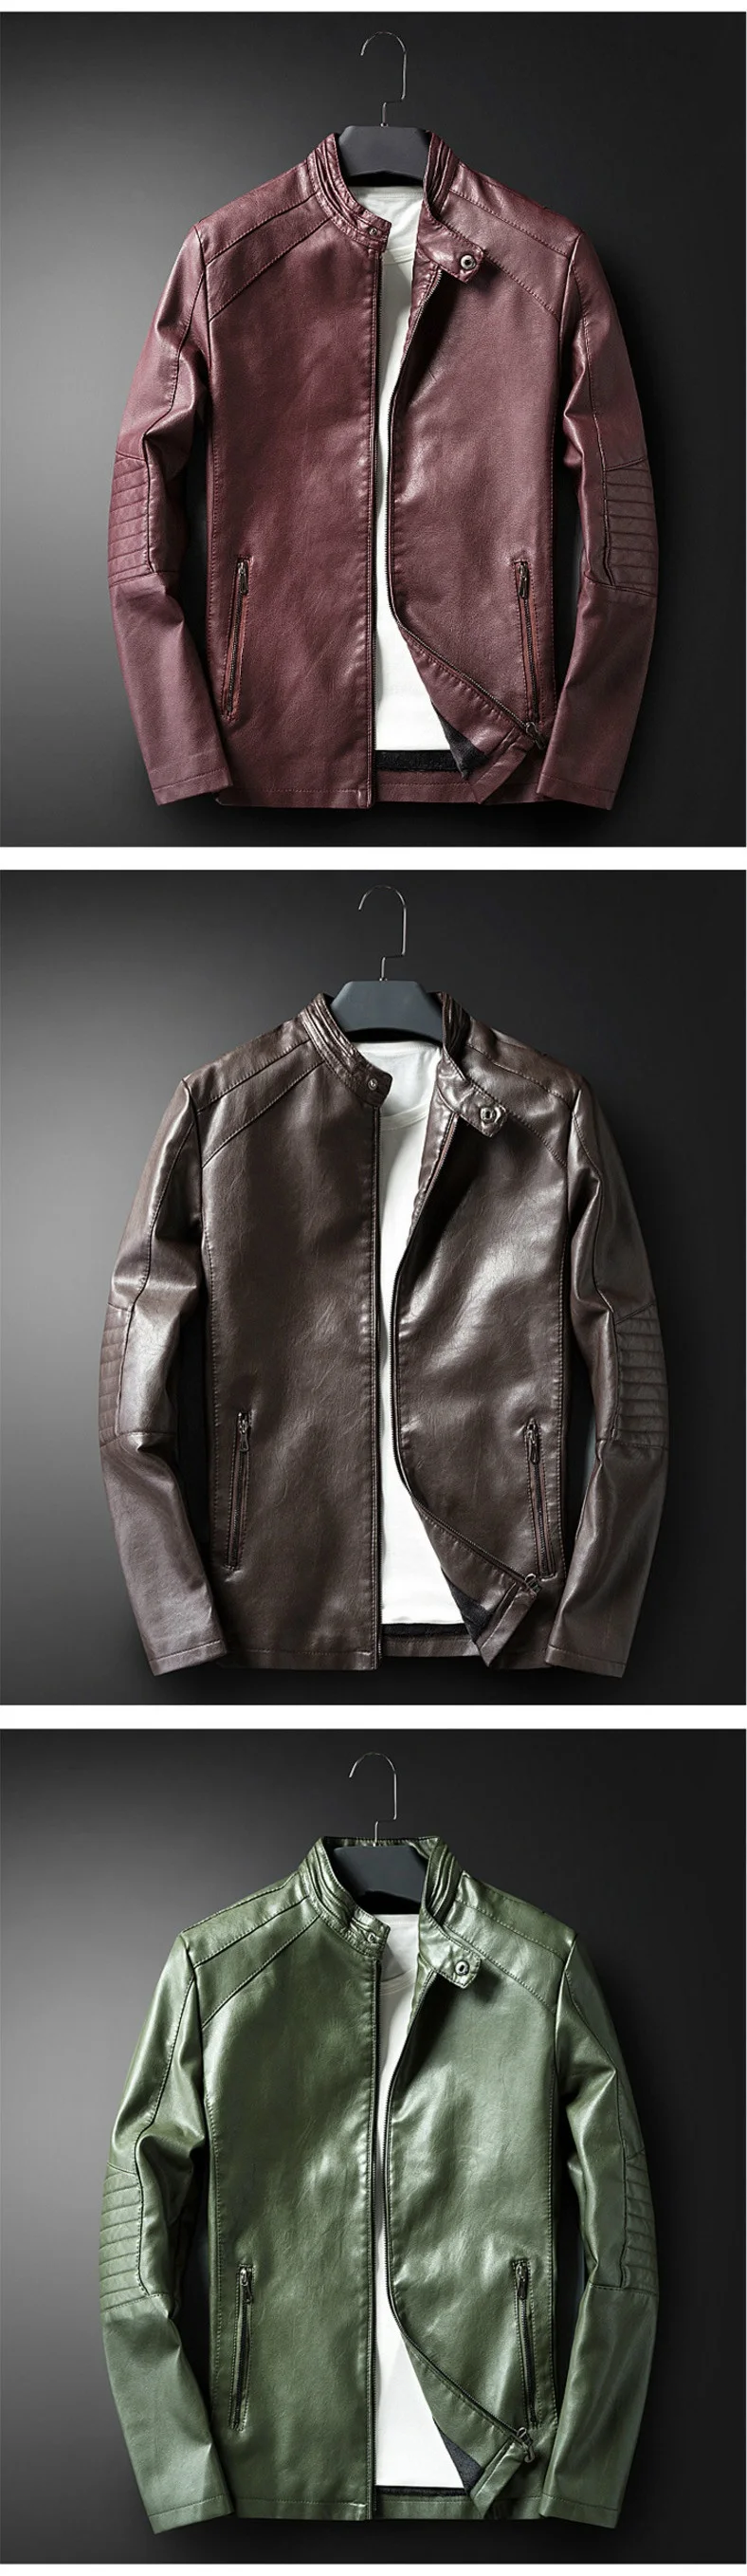 Новое поступление осень-зима Для мужчин красивый кожаная куртка Модные мотоботы в стиле панк Кожаные куртки простой Для мужчин s